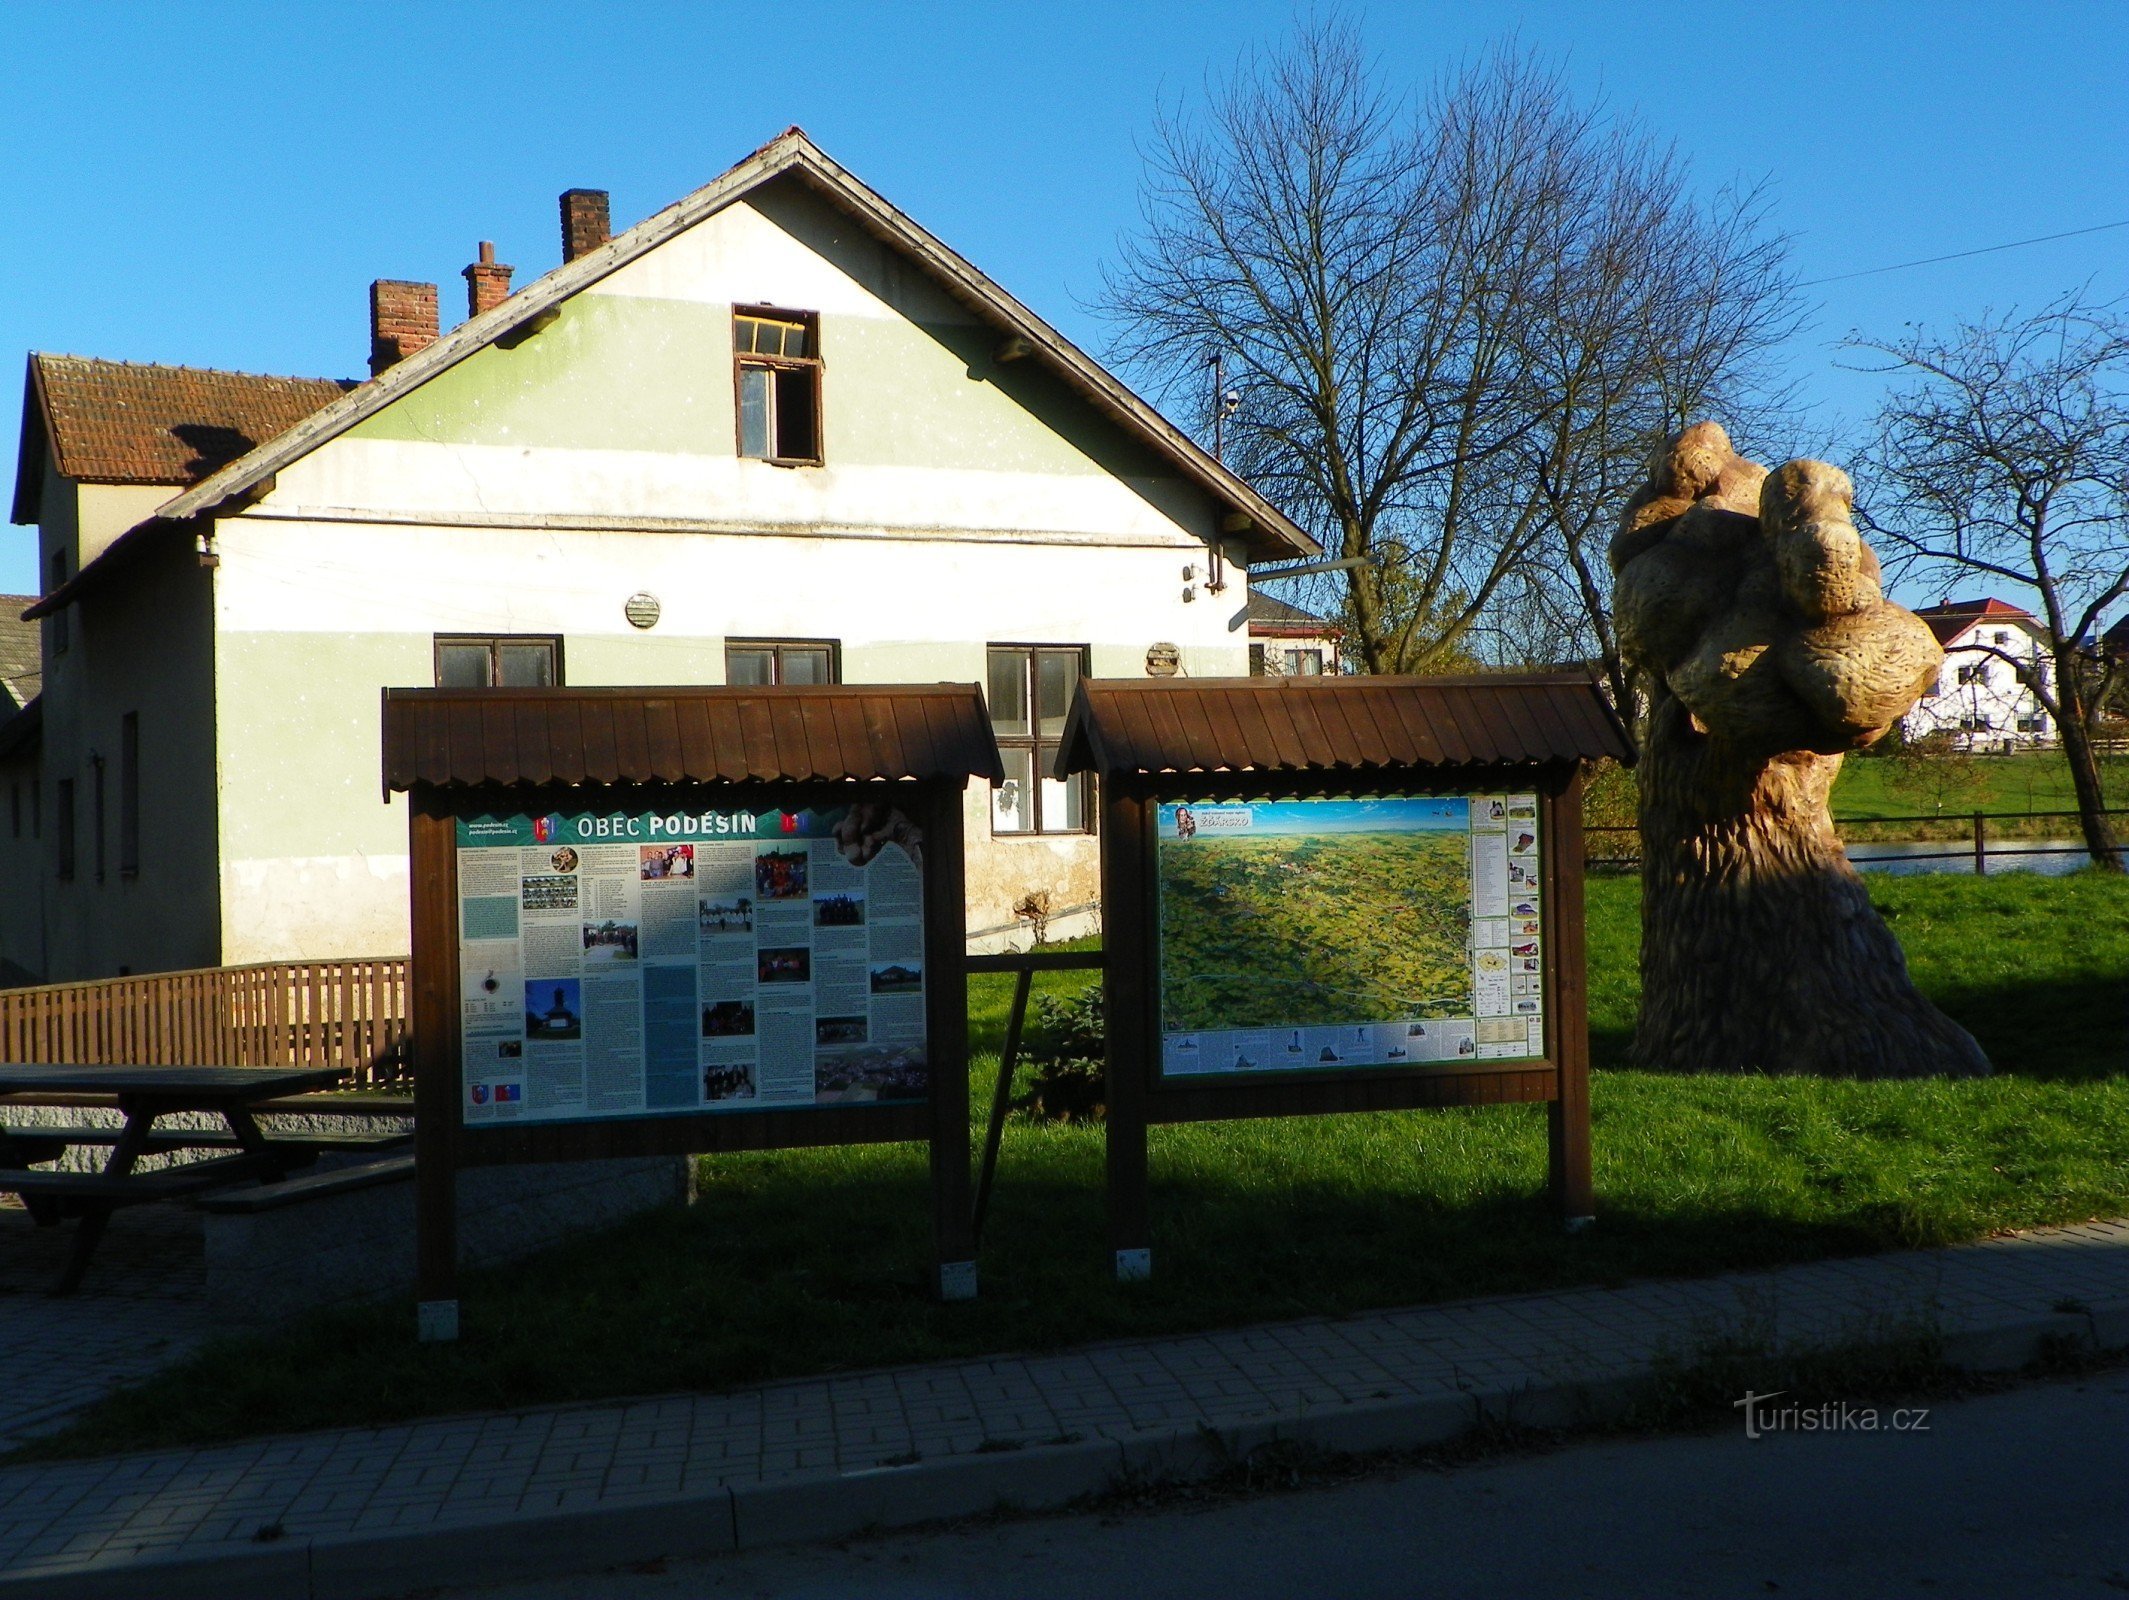 Pannello informativo presso l'albero di cemento a Poděšín